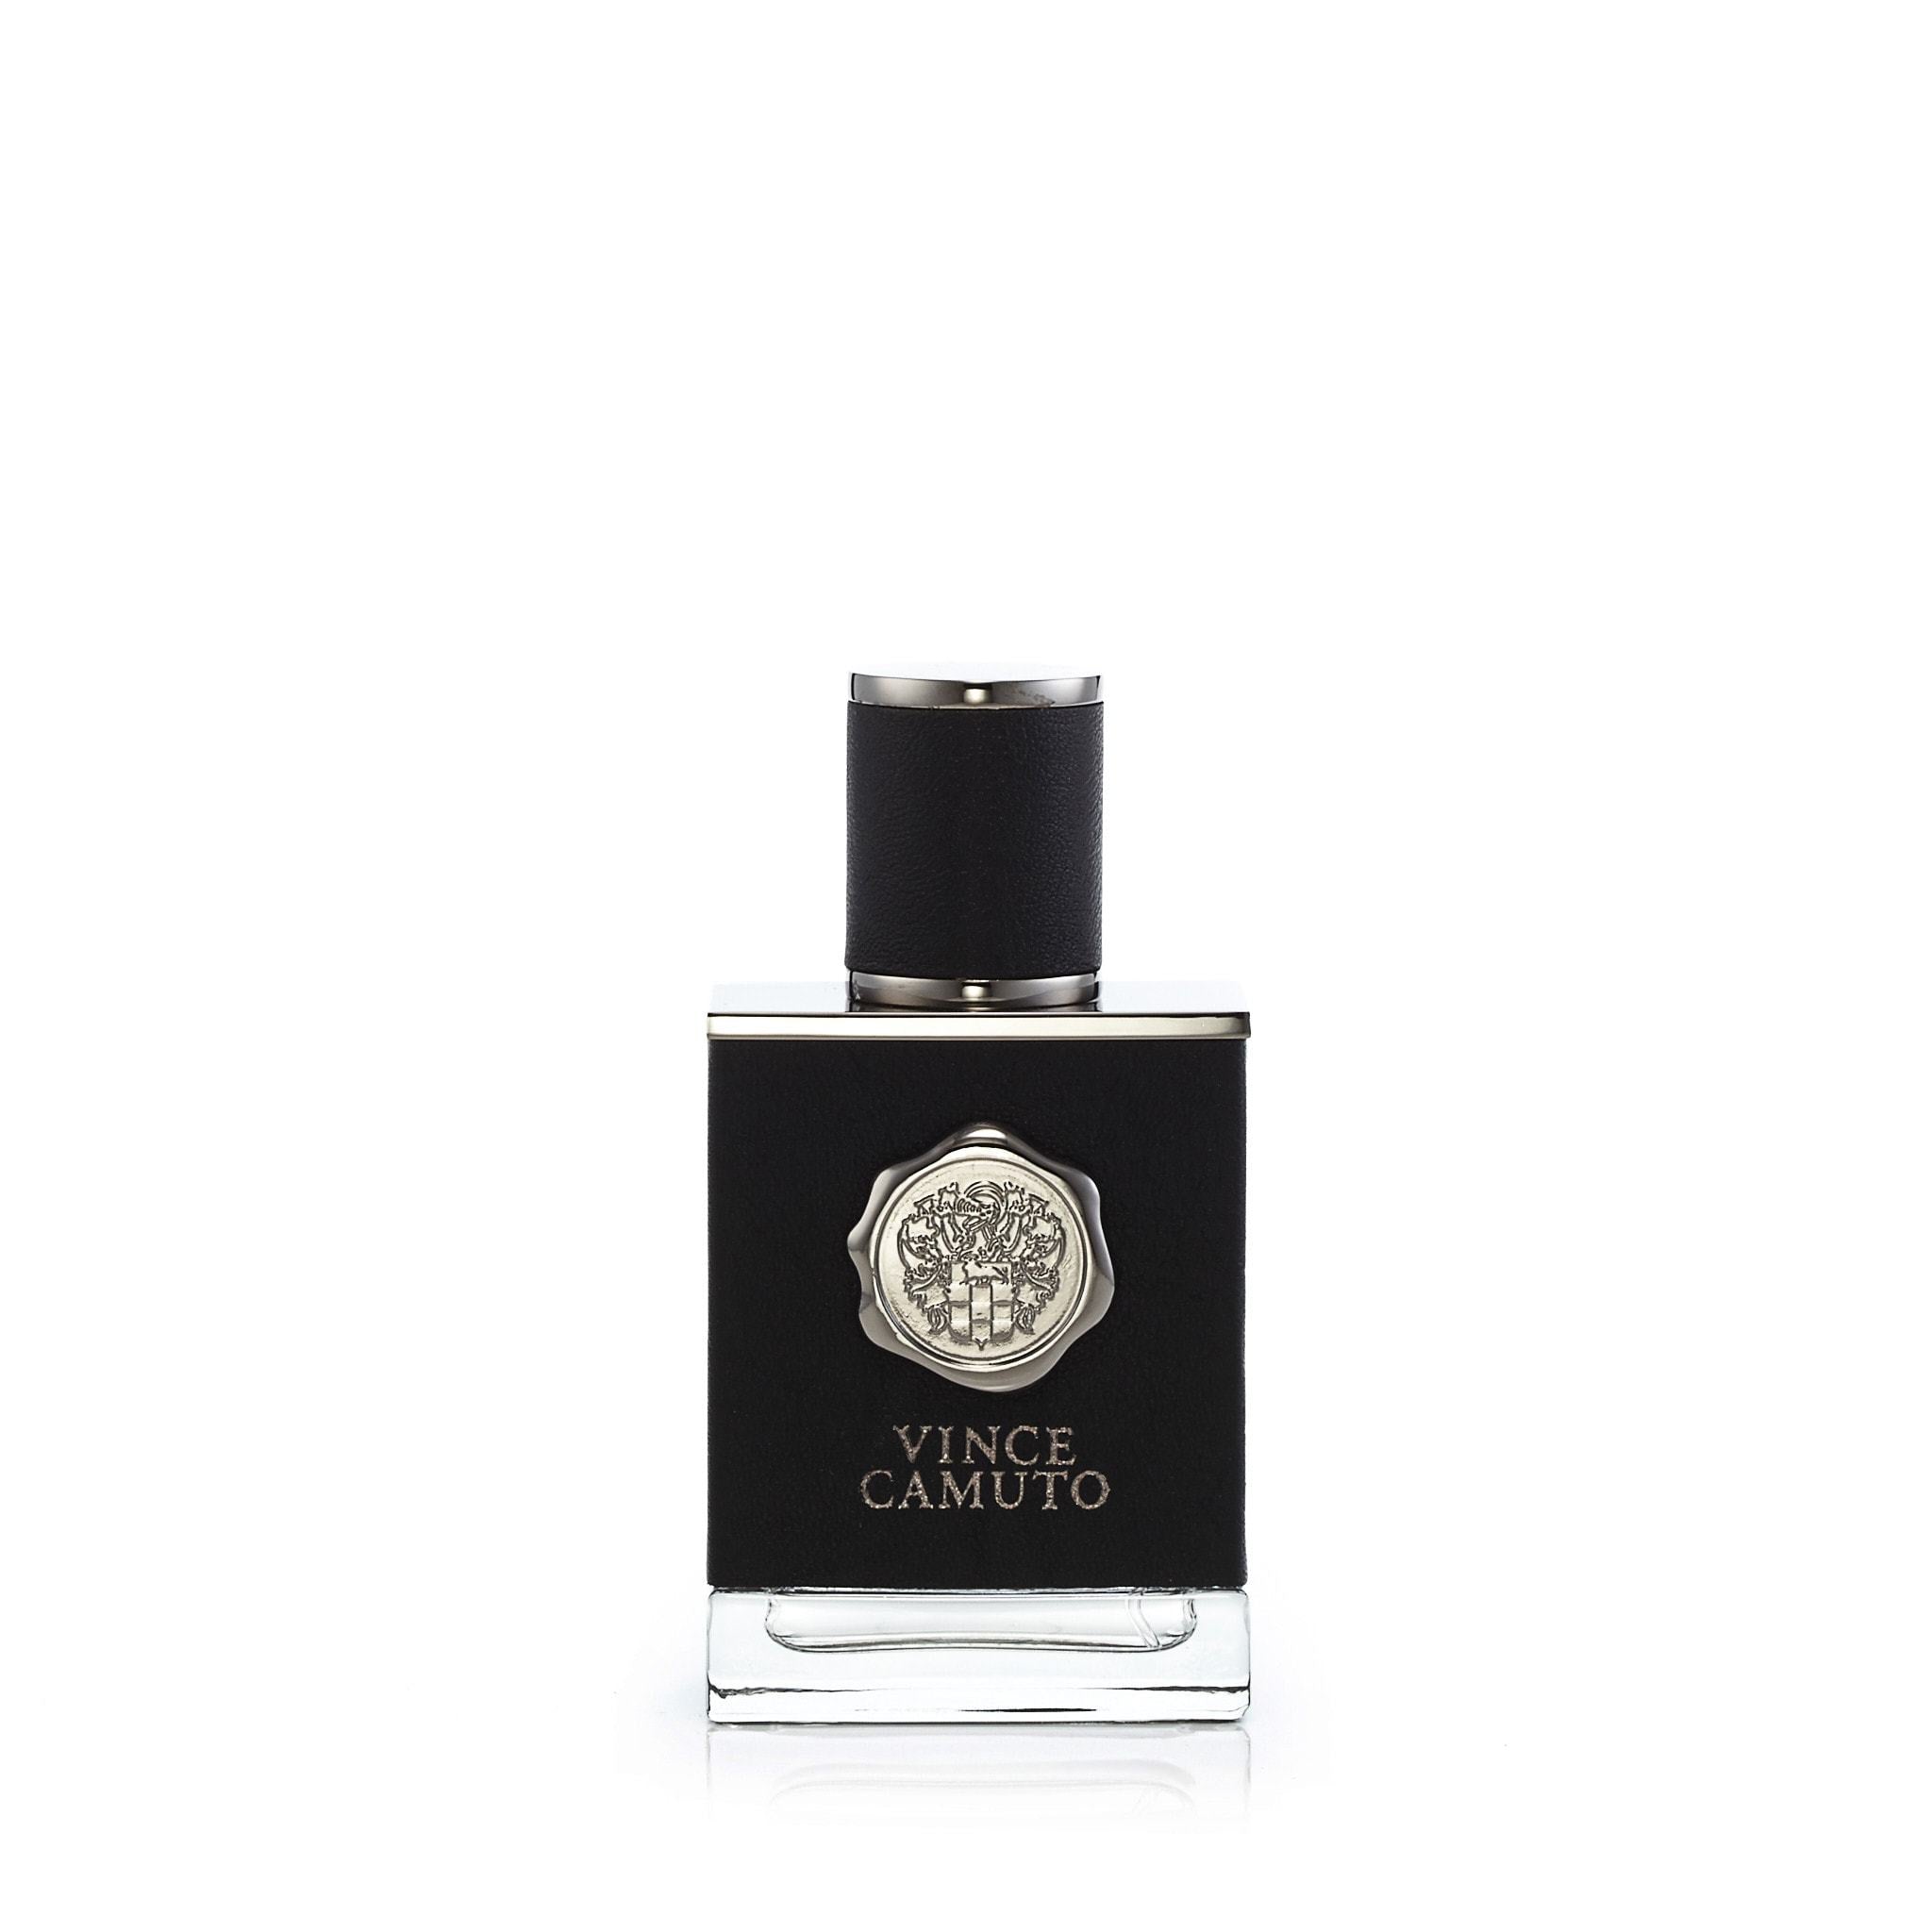 https://perfumania.com/cdn/shop/products/Vince-Camuto-Vince-Camuto-Mens-Eau-De-Toilette-EDT-Spray-1.7-oz.-Best-Price-Fragrance-Parfume-FragranceOutlet.com-main.jpg?v=1598975882